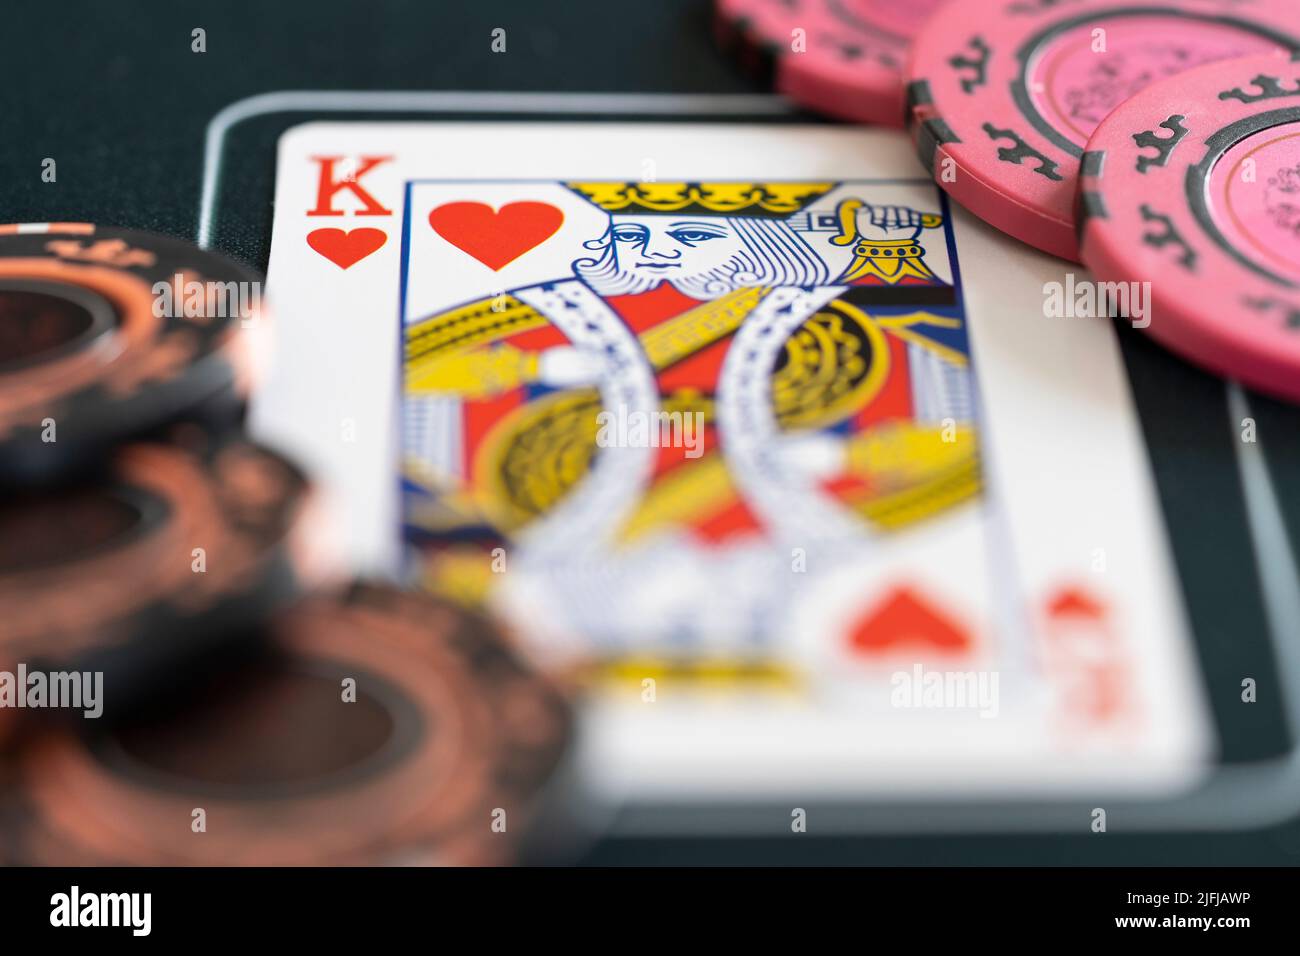 Gros plan d'un roi de coeur jouant carte et jetons de pari de poker sur un tapis de poker. Concept - stratégie de poker, jeu, Paris, dépendance de jeu Banque D'Images